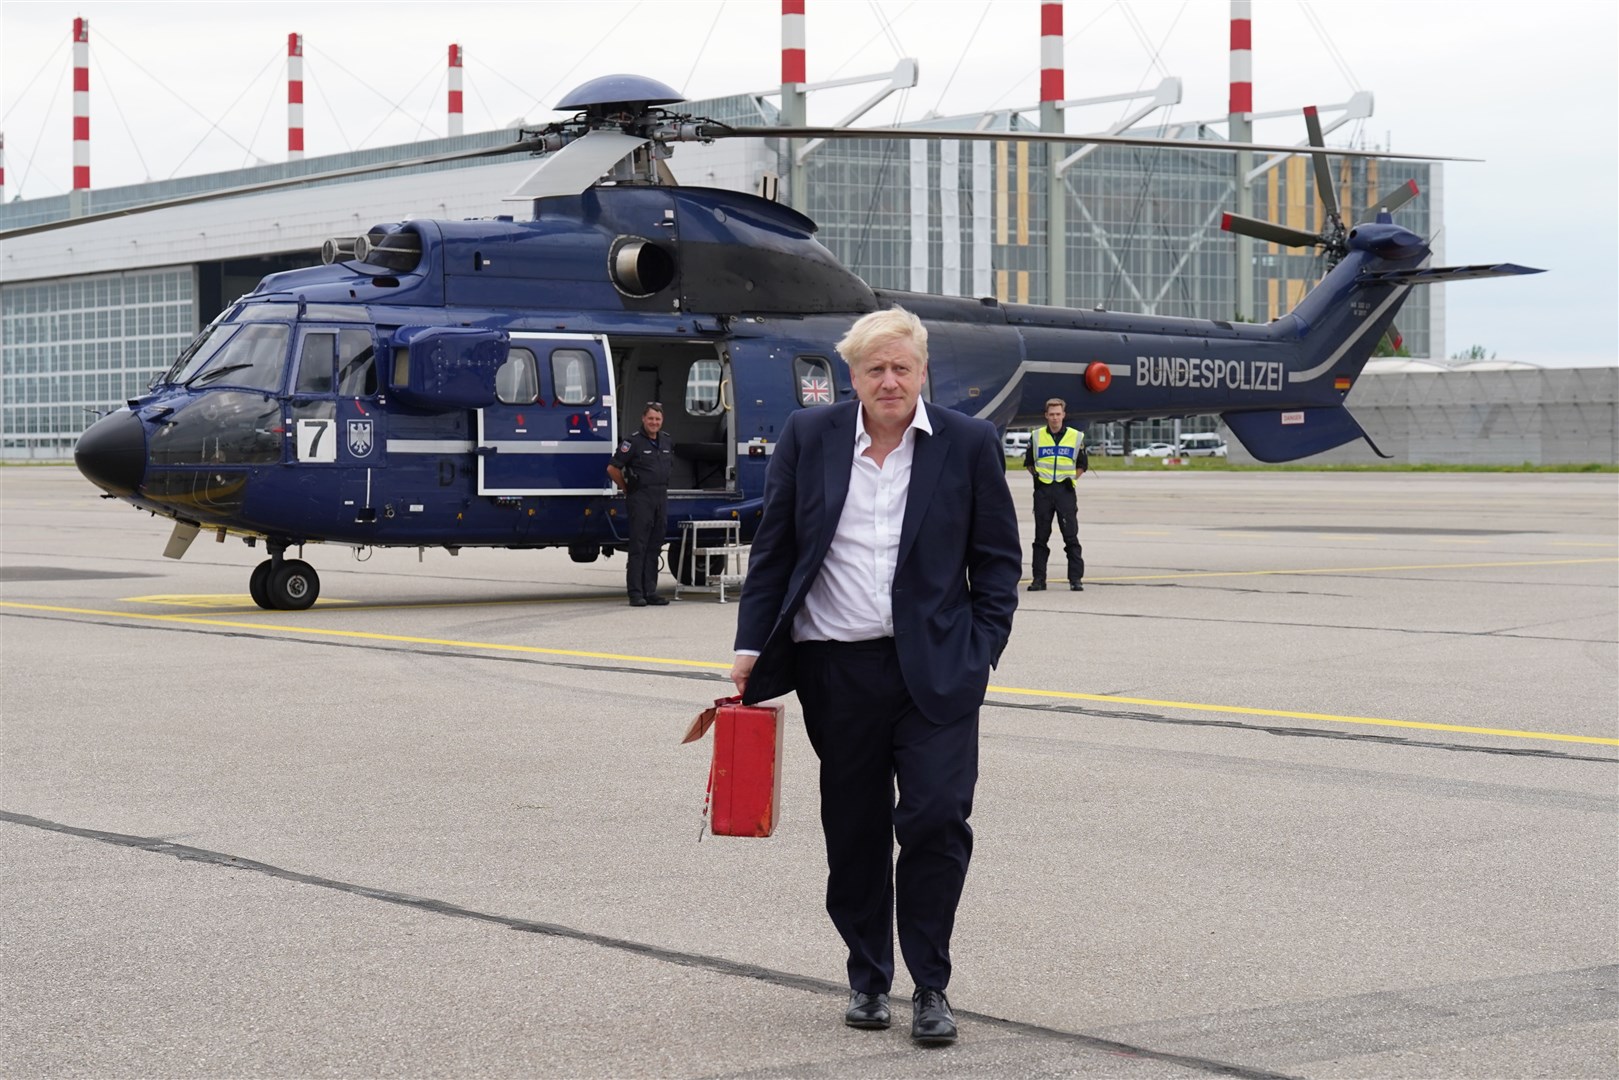 Boris Johnson leaving the G7 summit in Germany (Stefan Rousseau/PA)